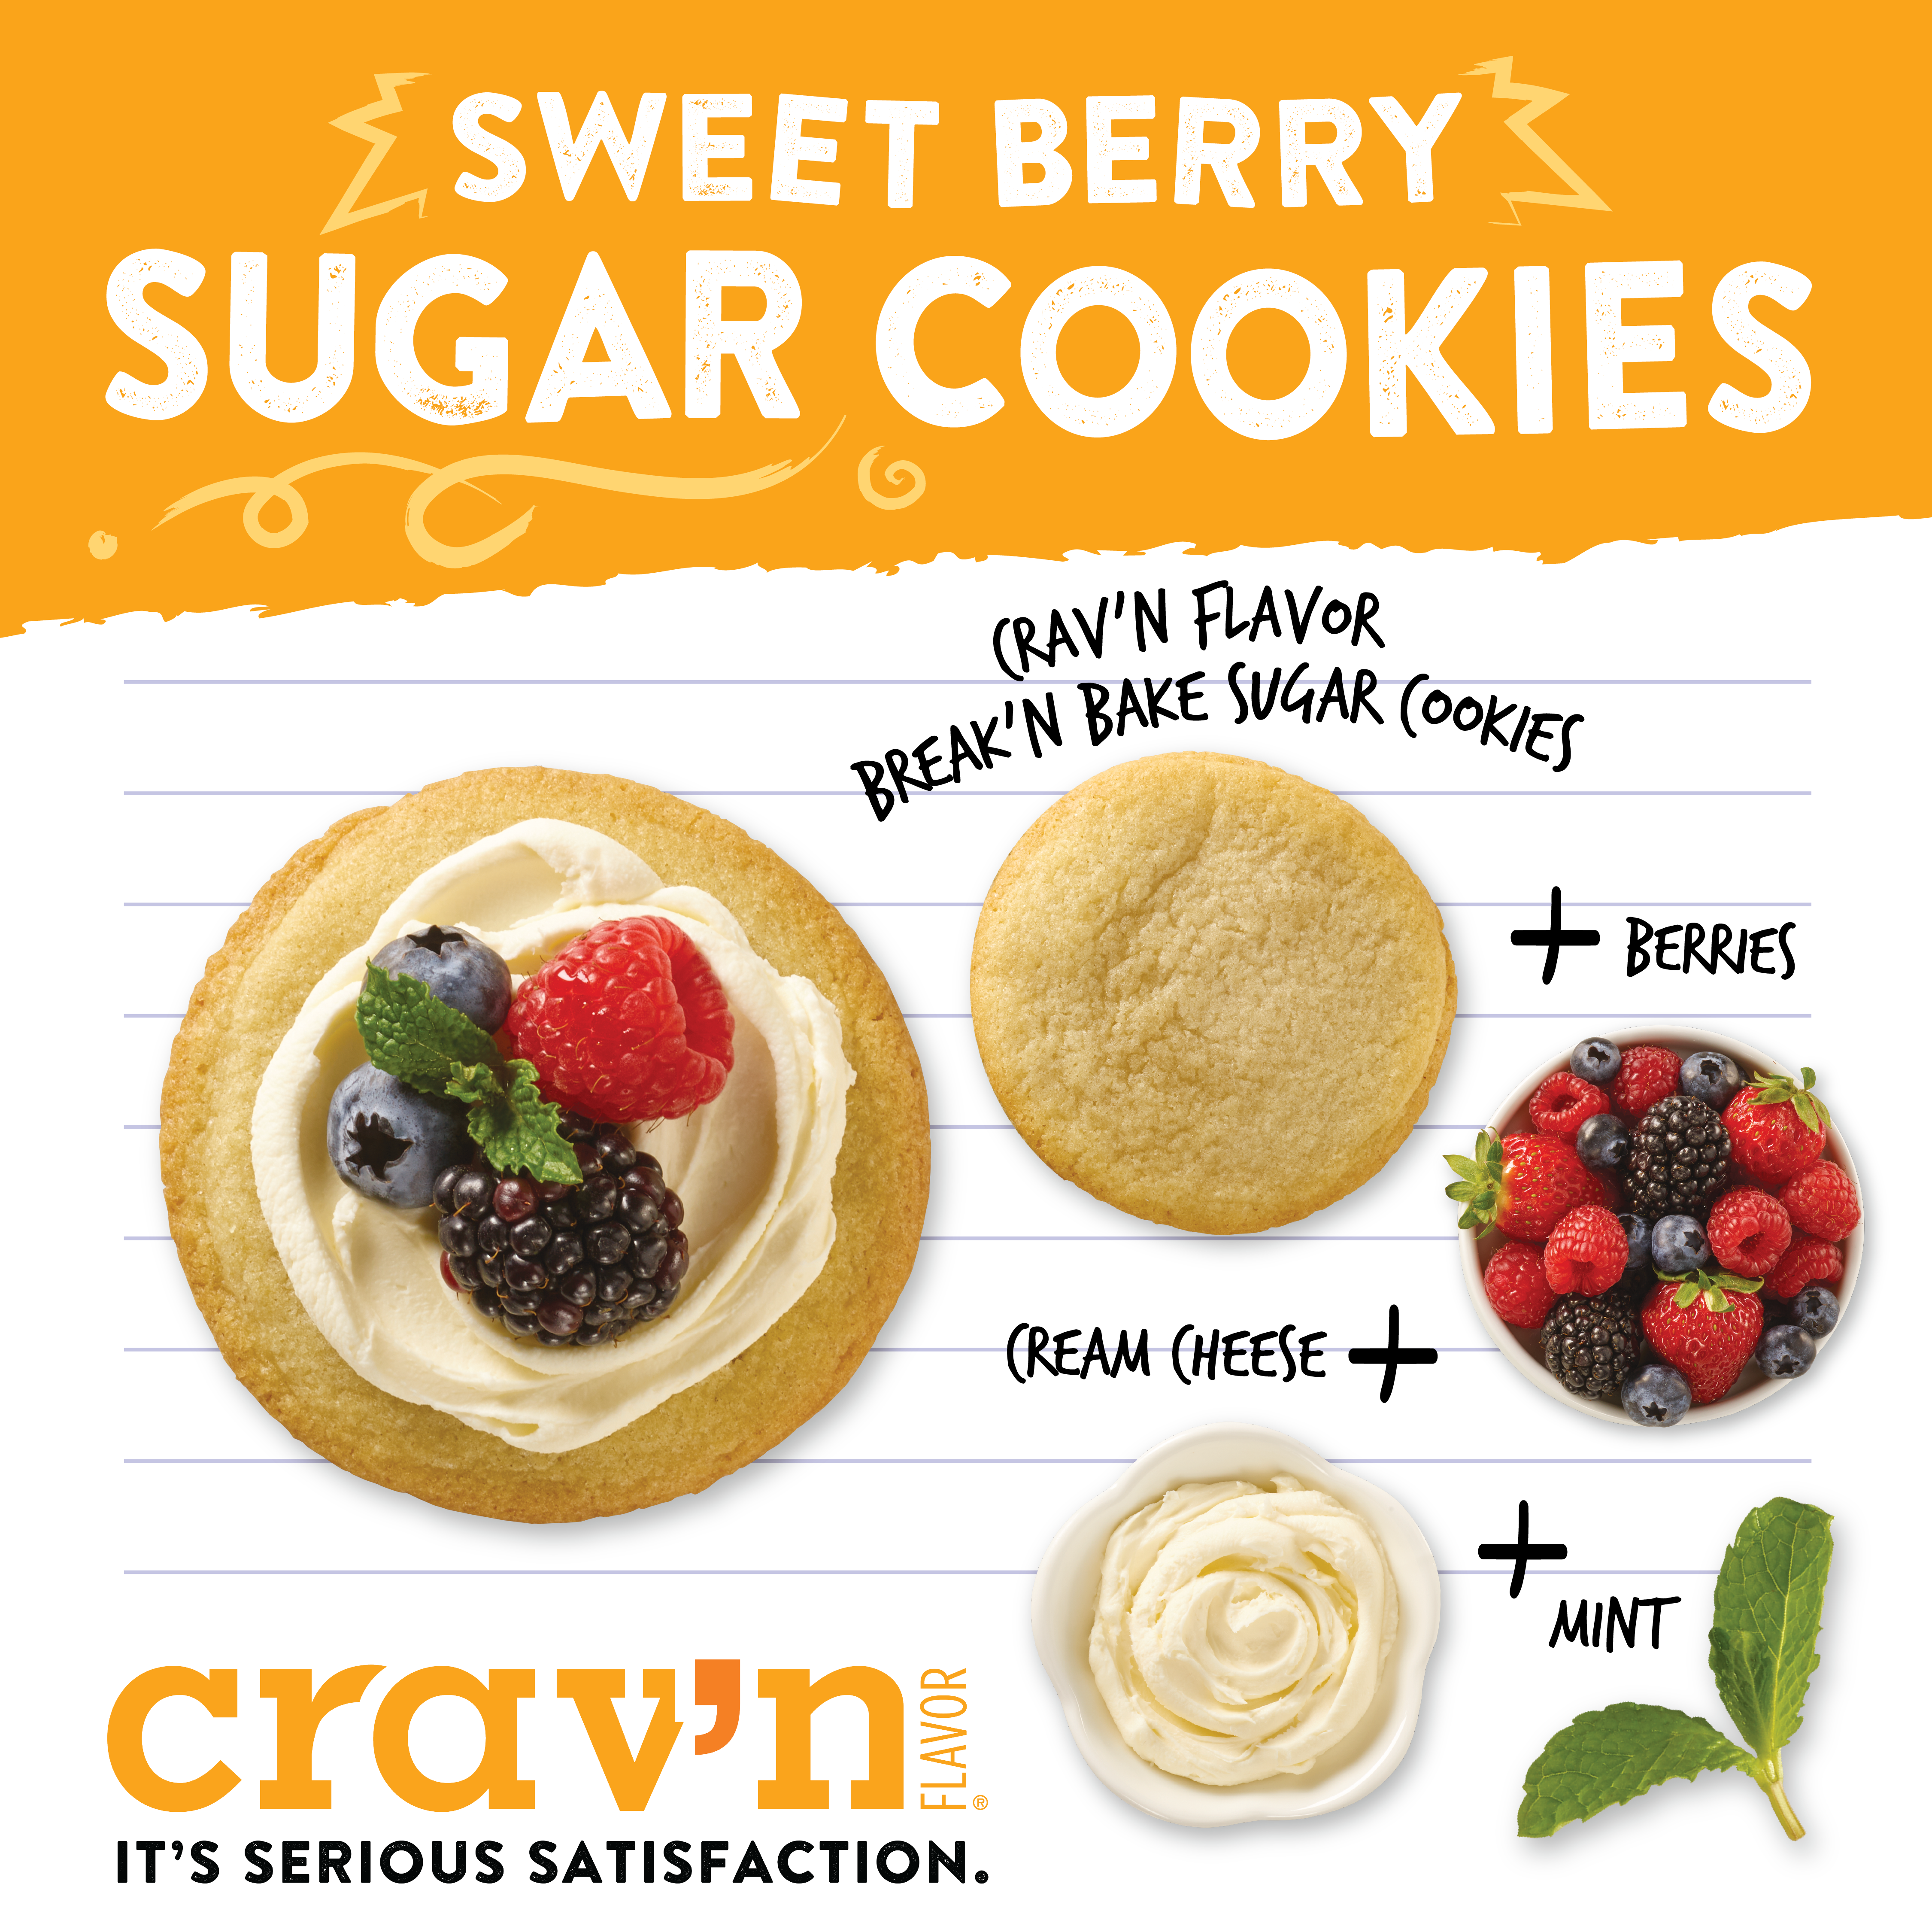 Sweet Berry Sugar Cookies